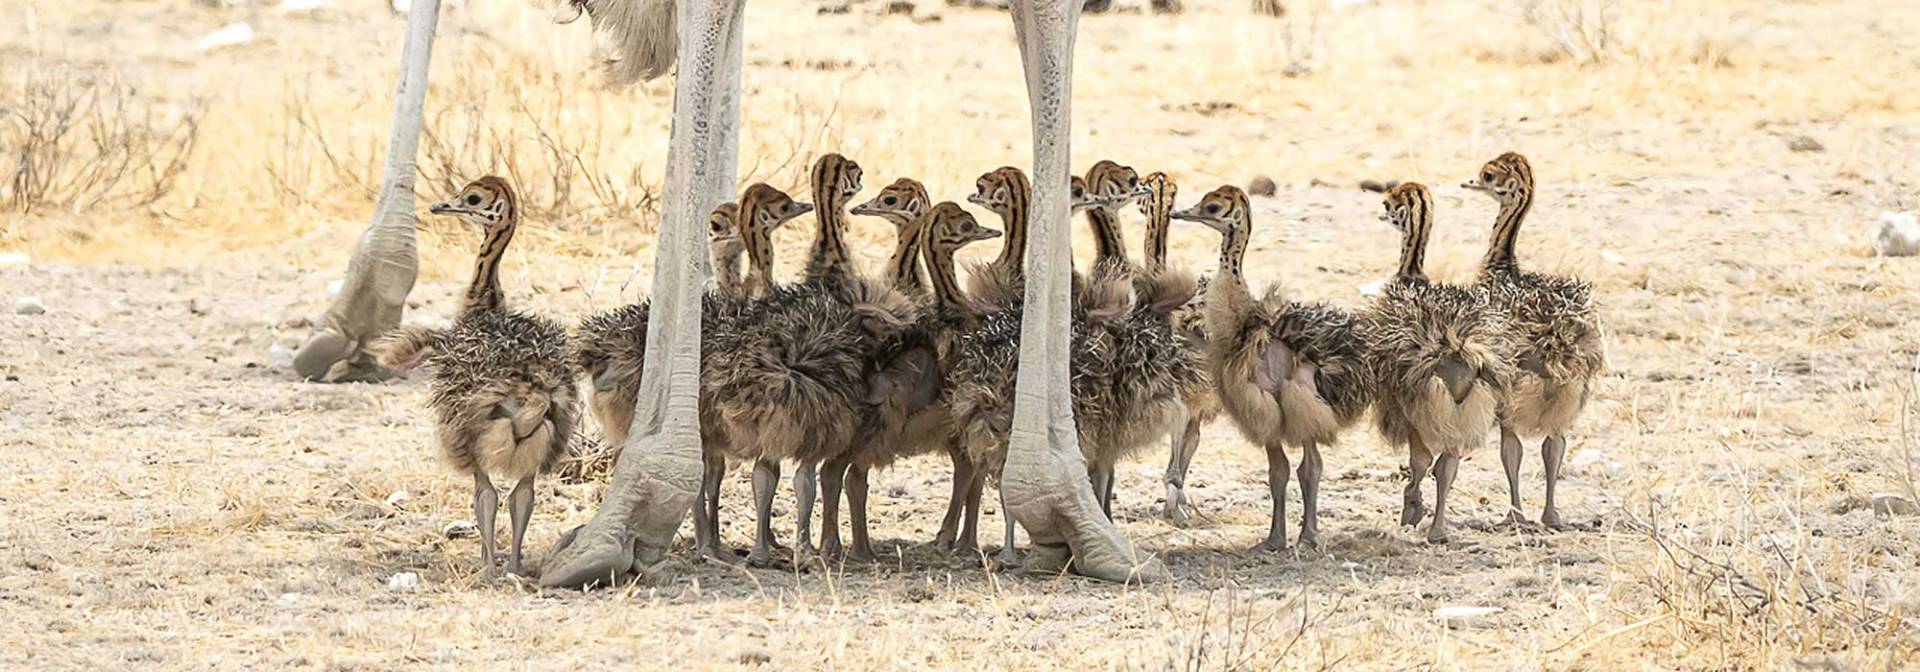 Kalahari - Ostrich family